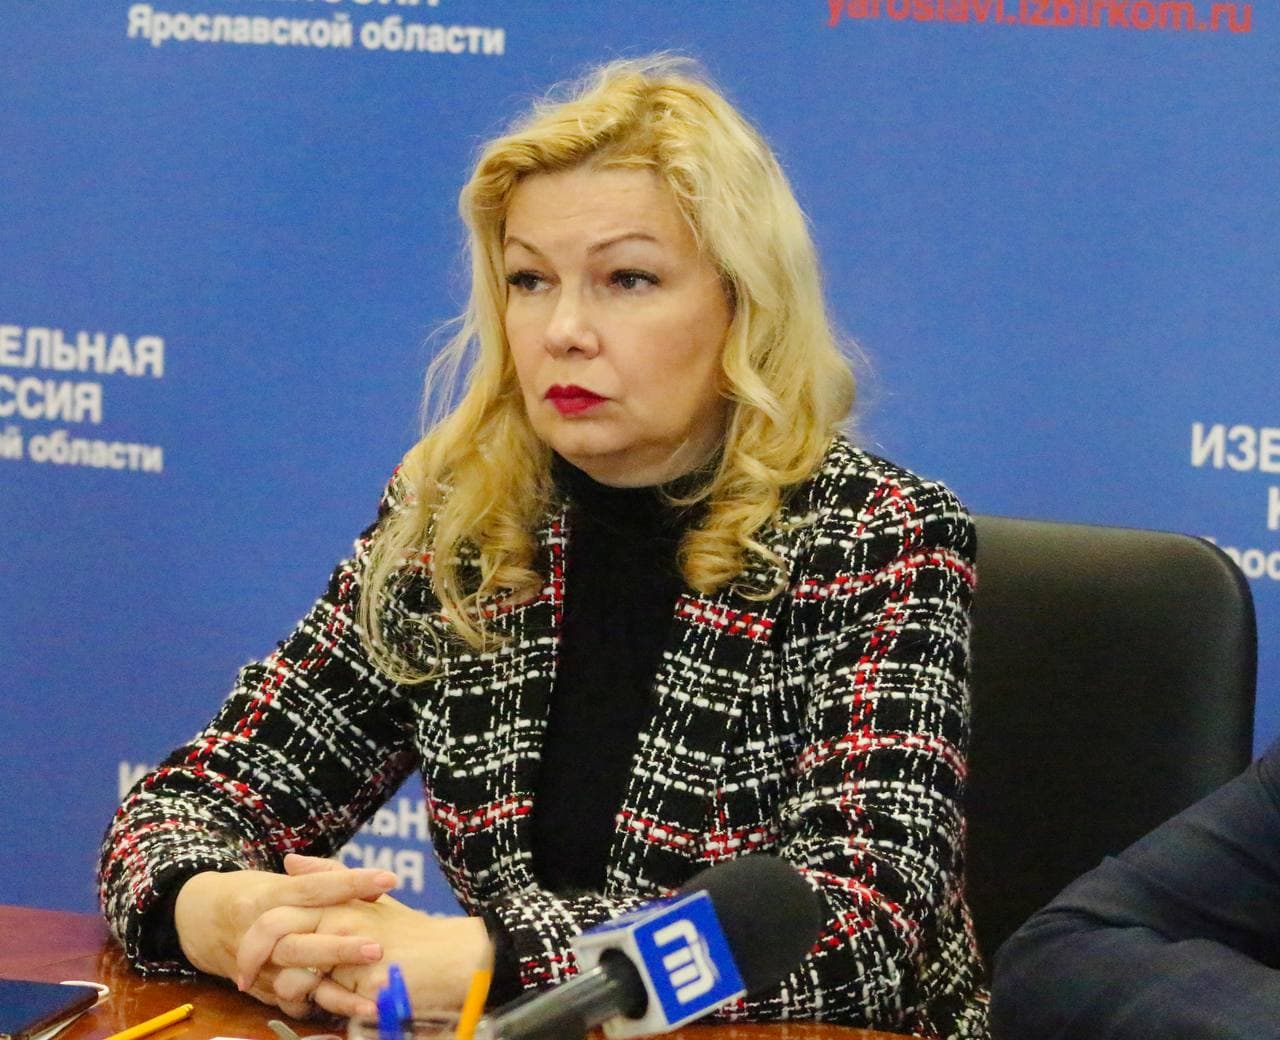 Член Штаба общественного наблюдения за выборами Татьяна Акопова рассказала об итогах организации электронного голосования в Ярославской области на пресс-конференции